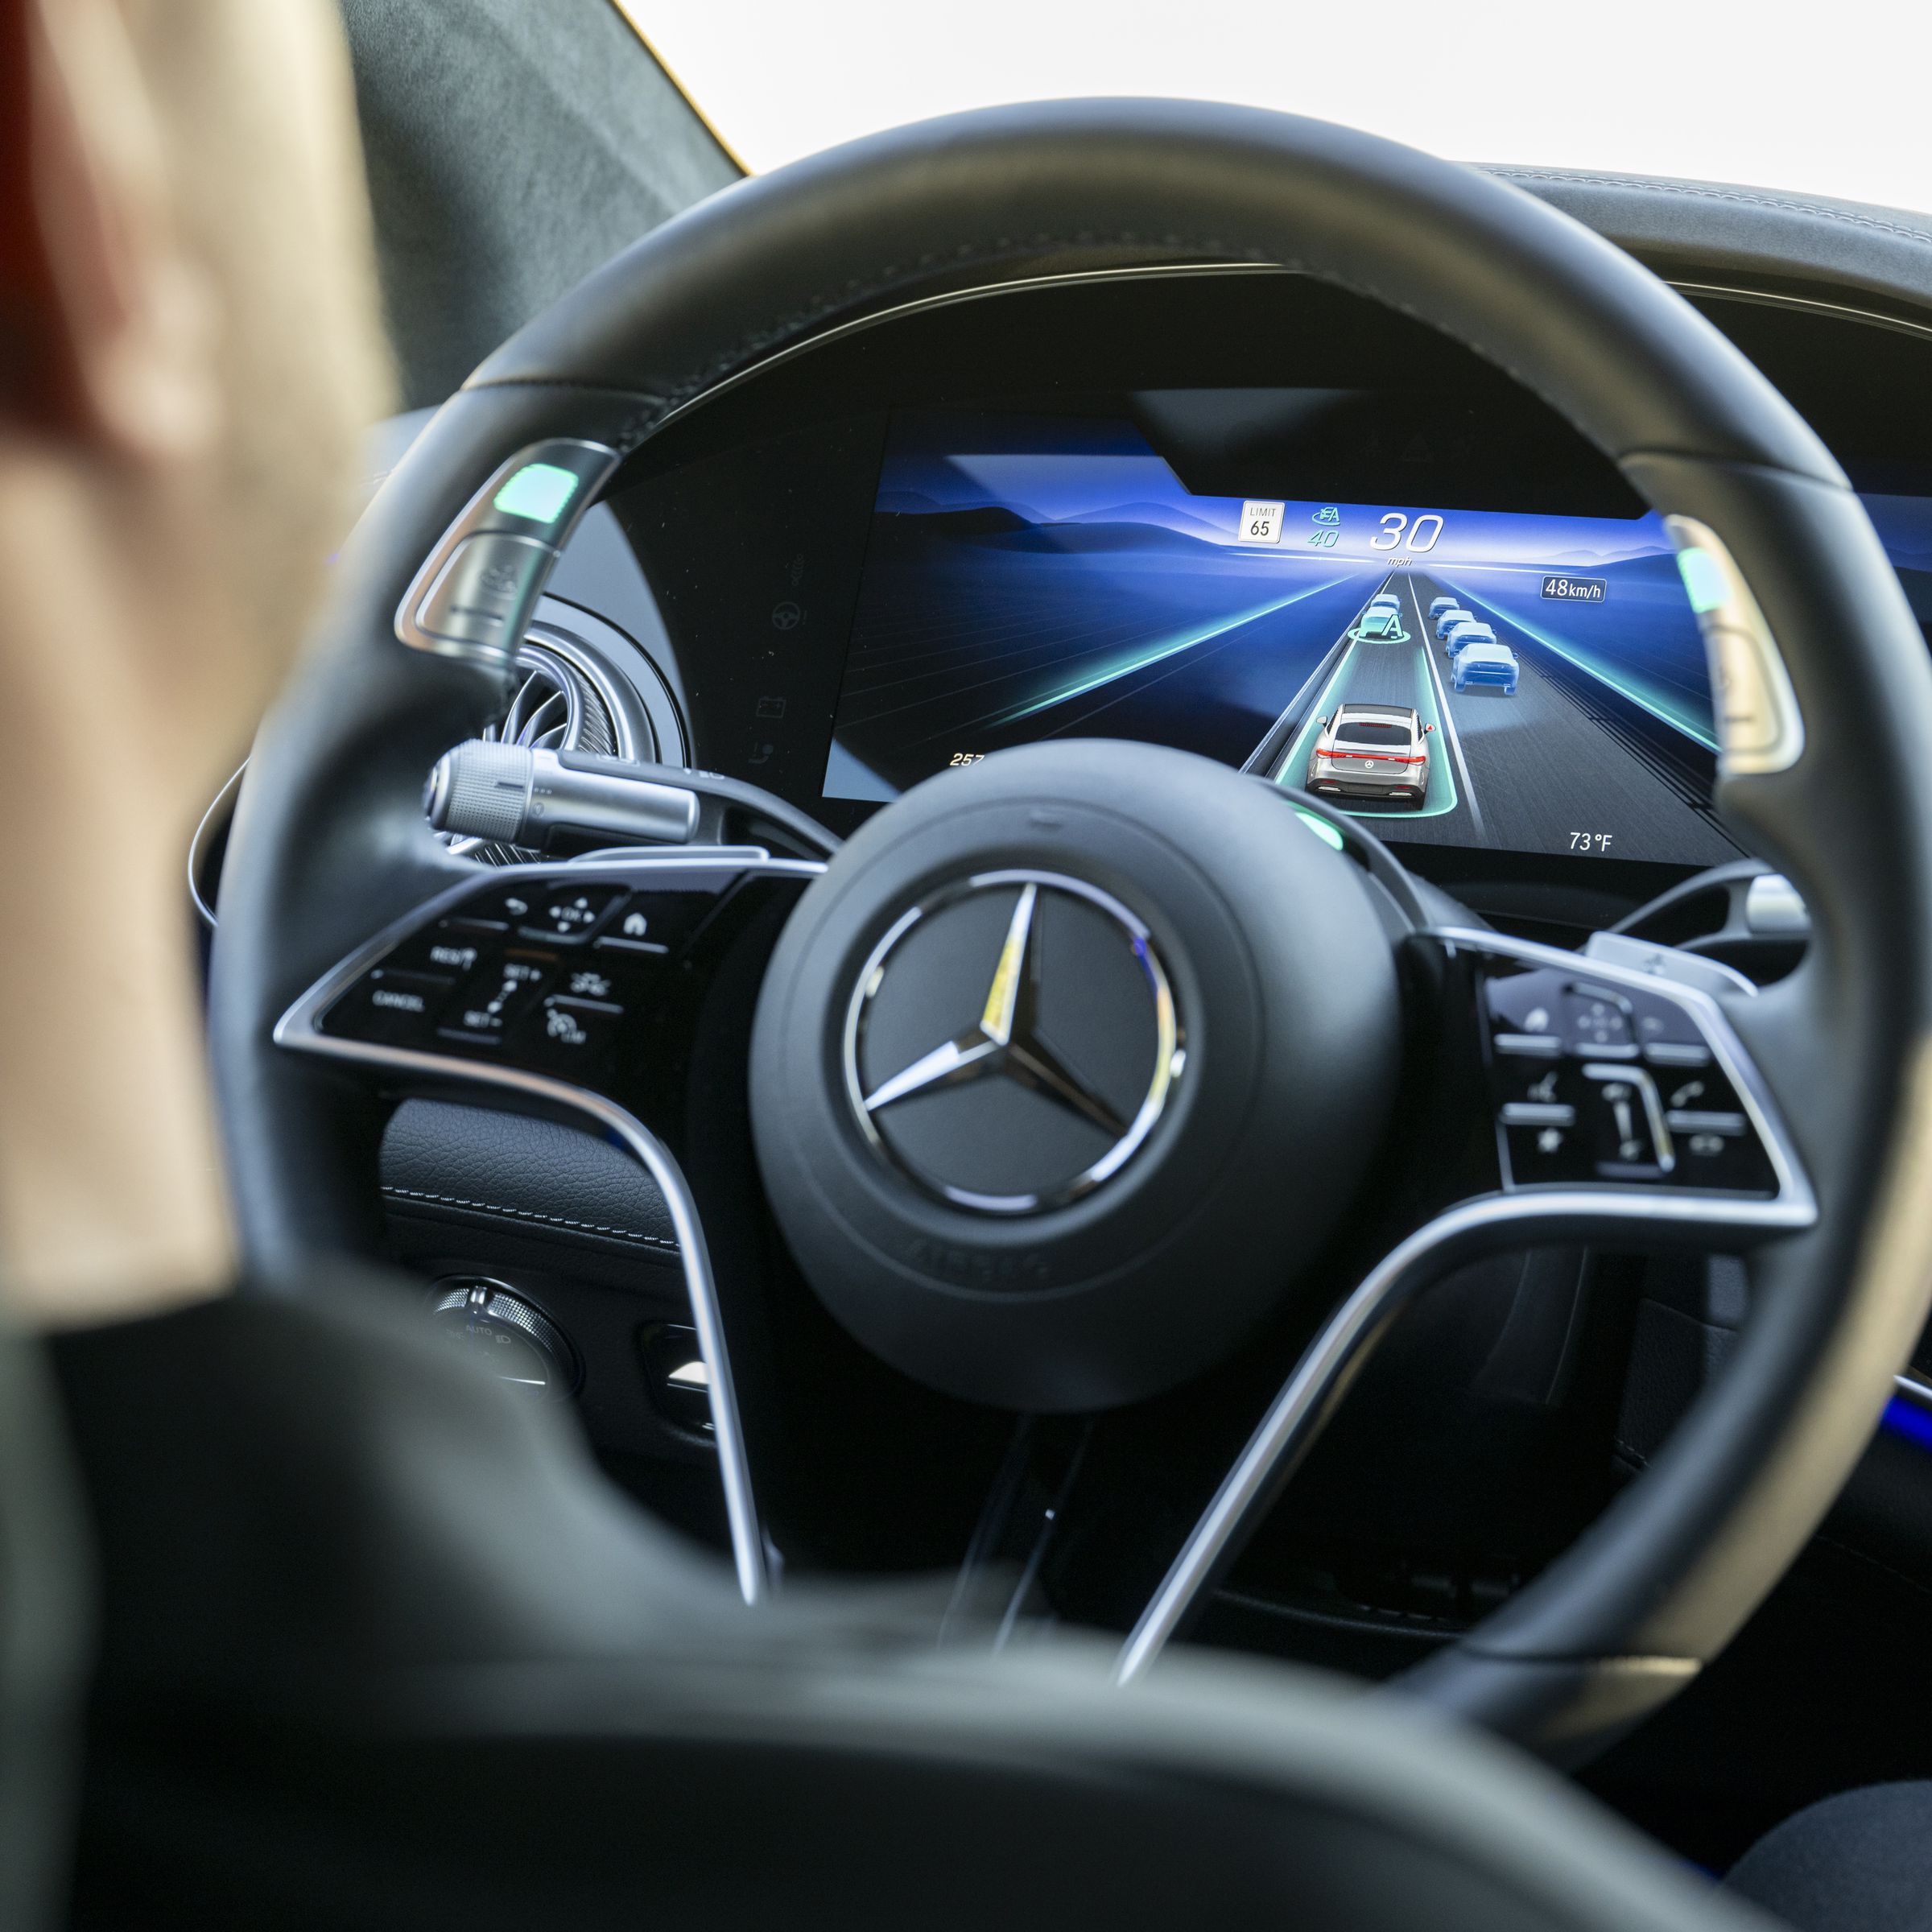 Mercedes-Benz steering wheel